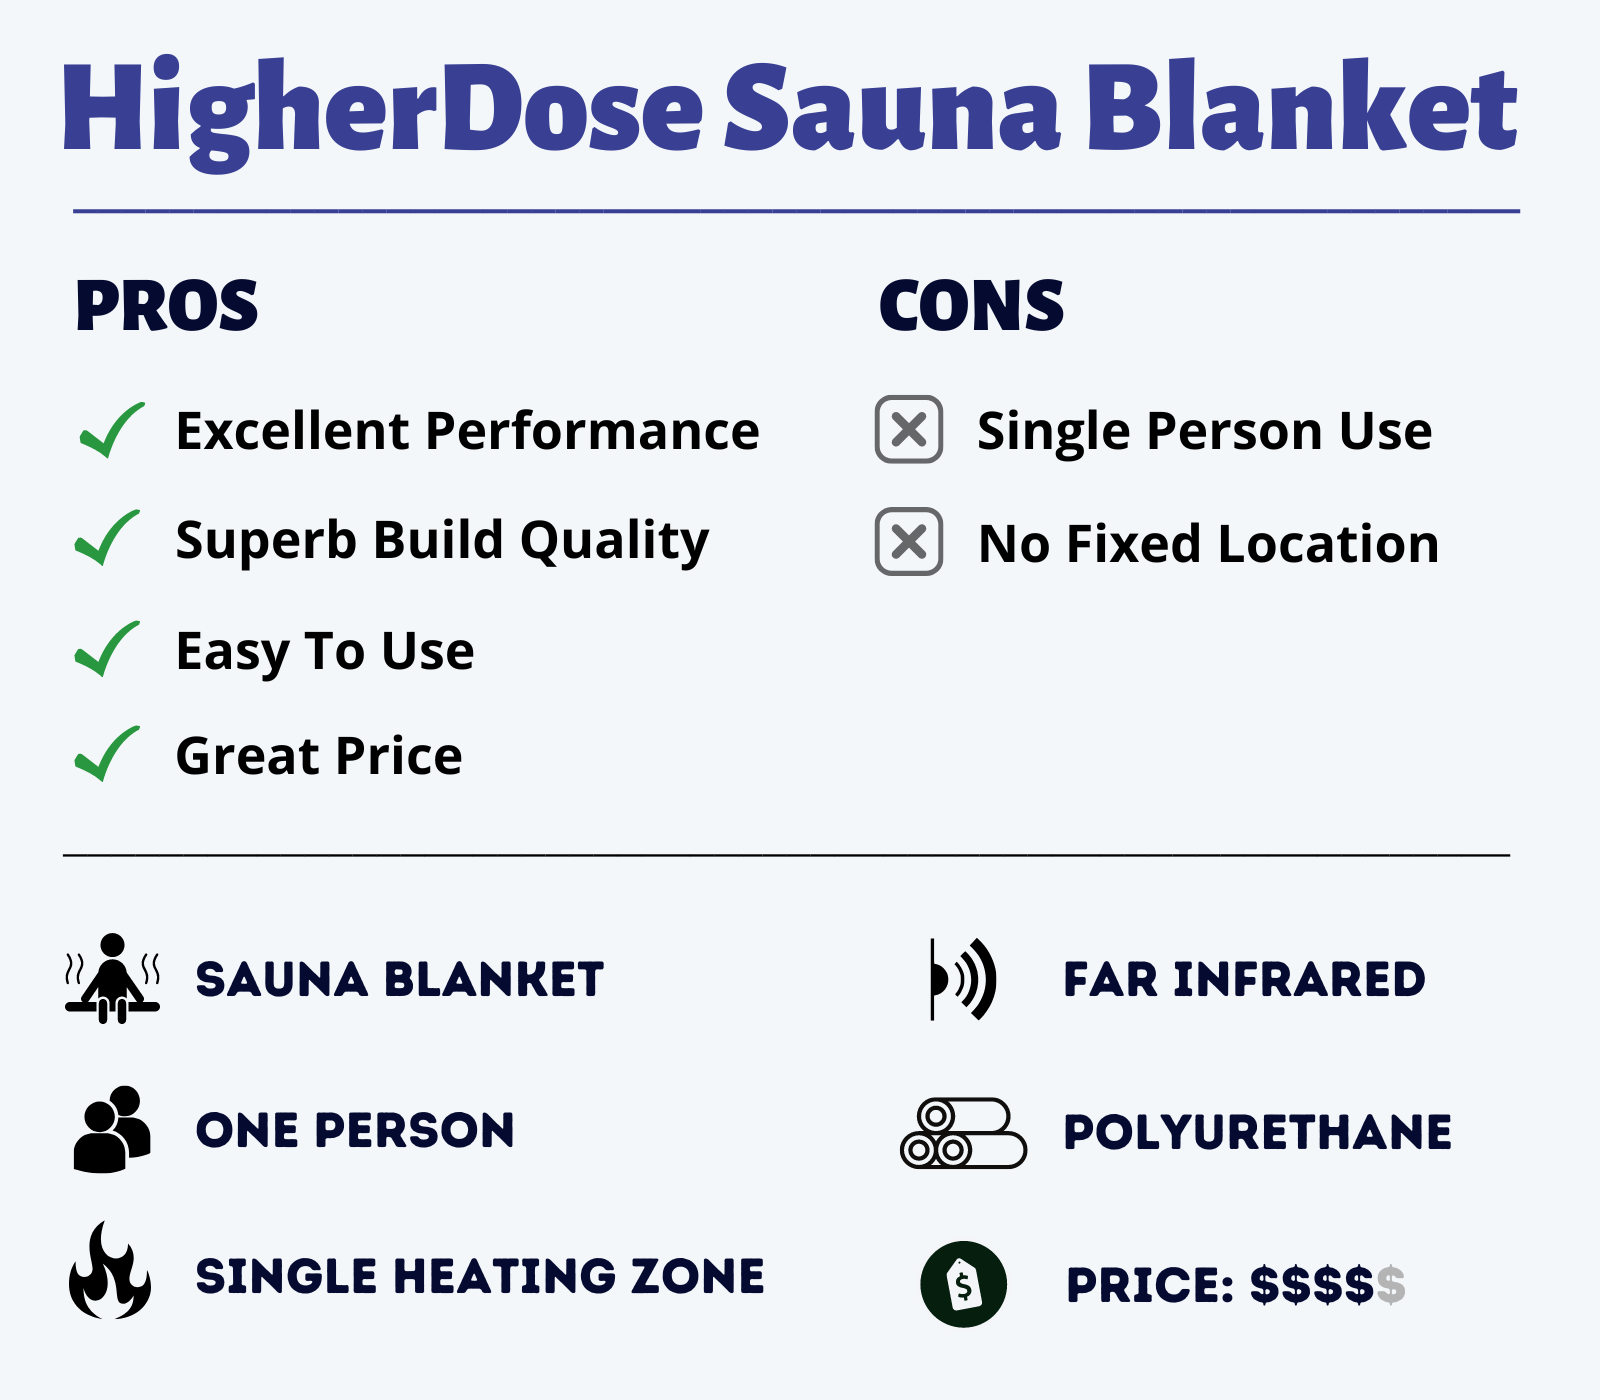 HigherDose Sauna Blanket Features Overview